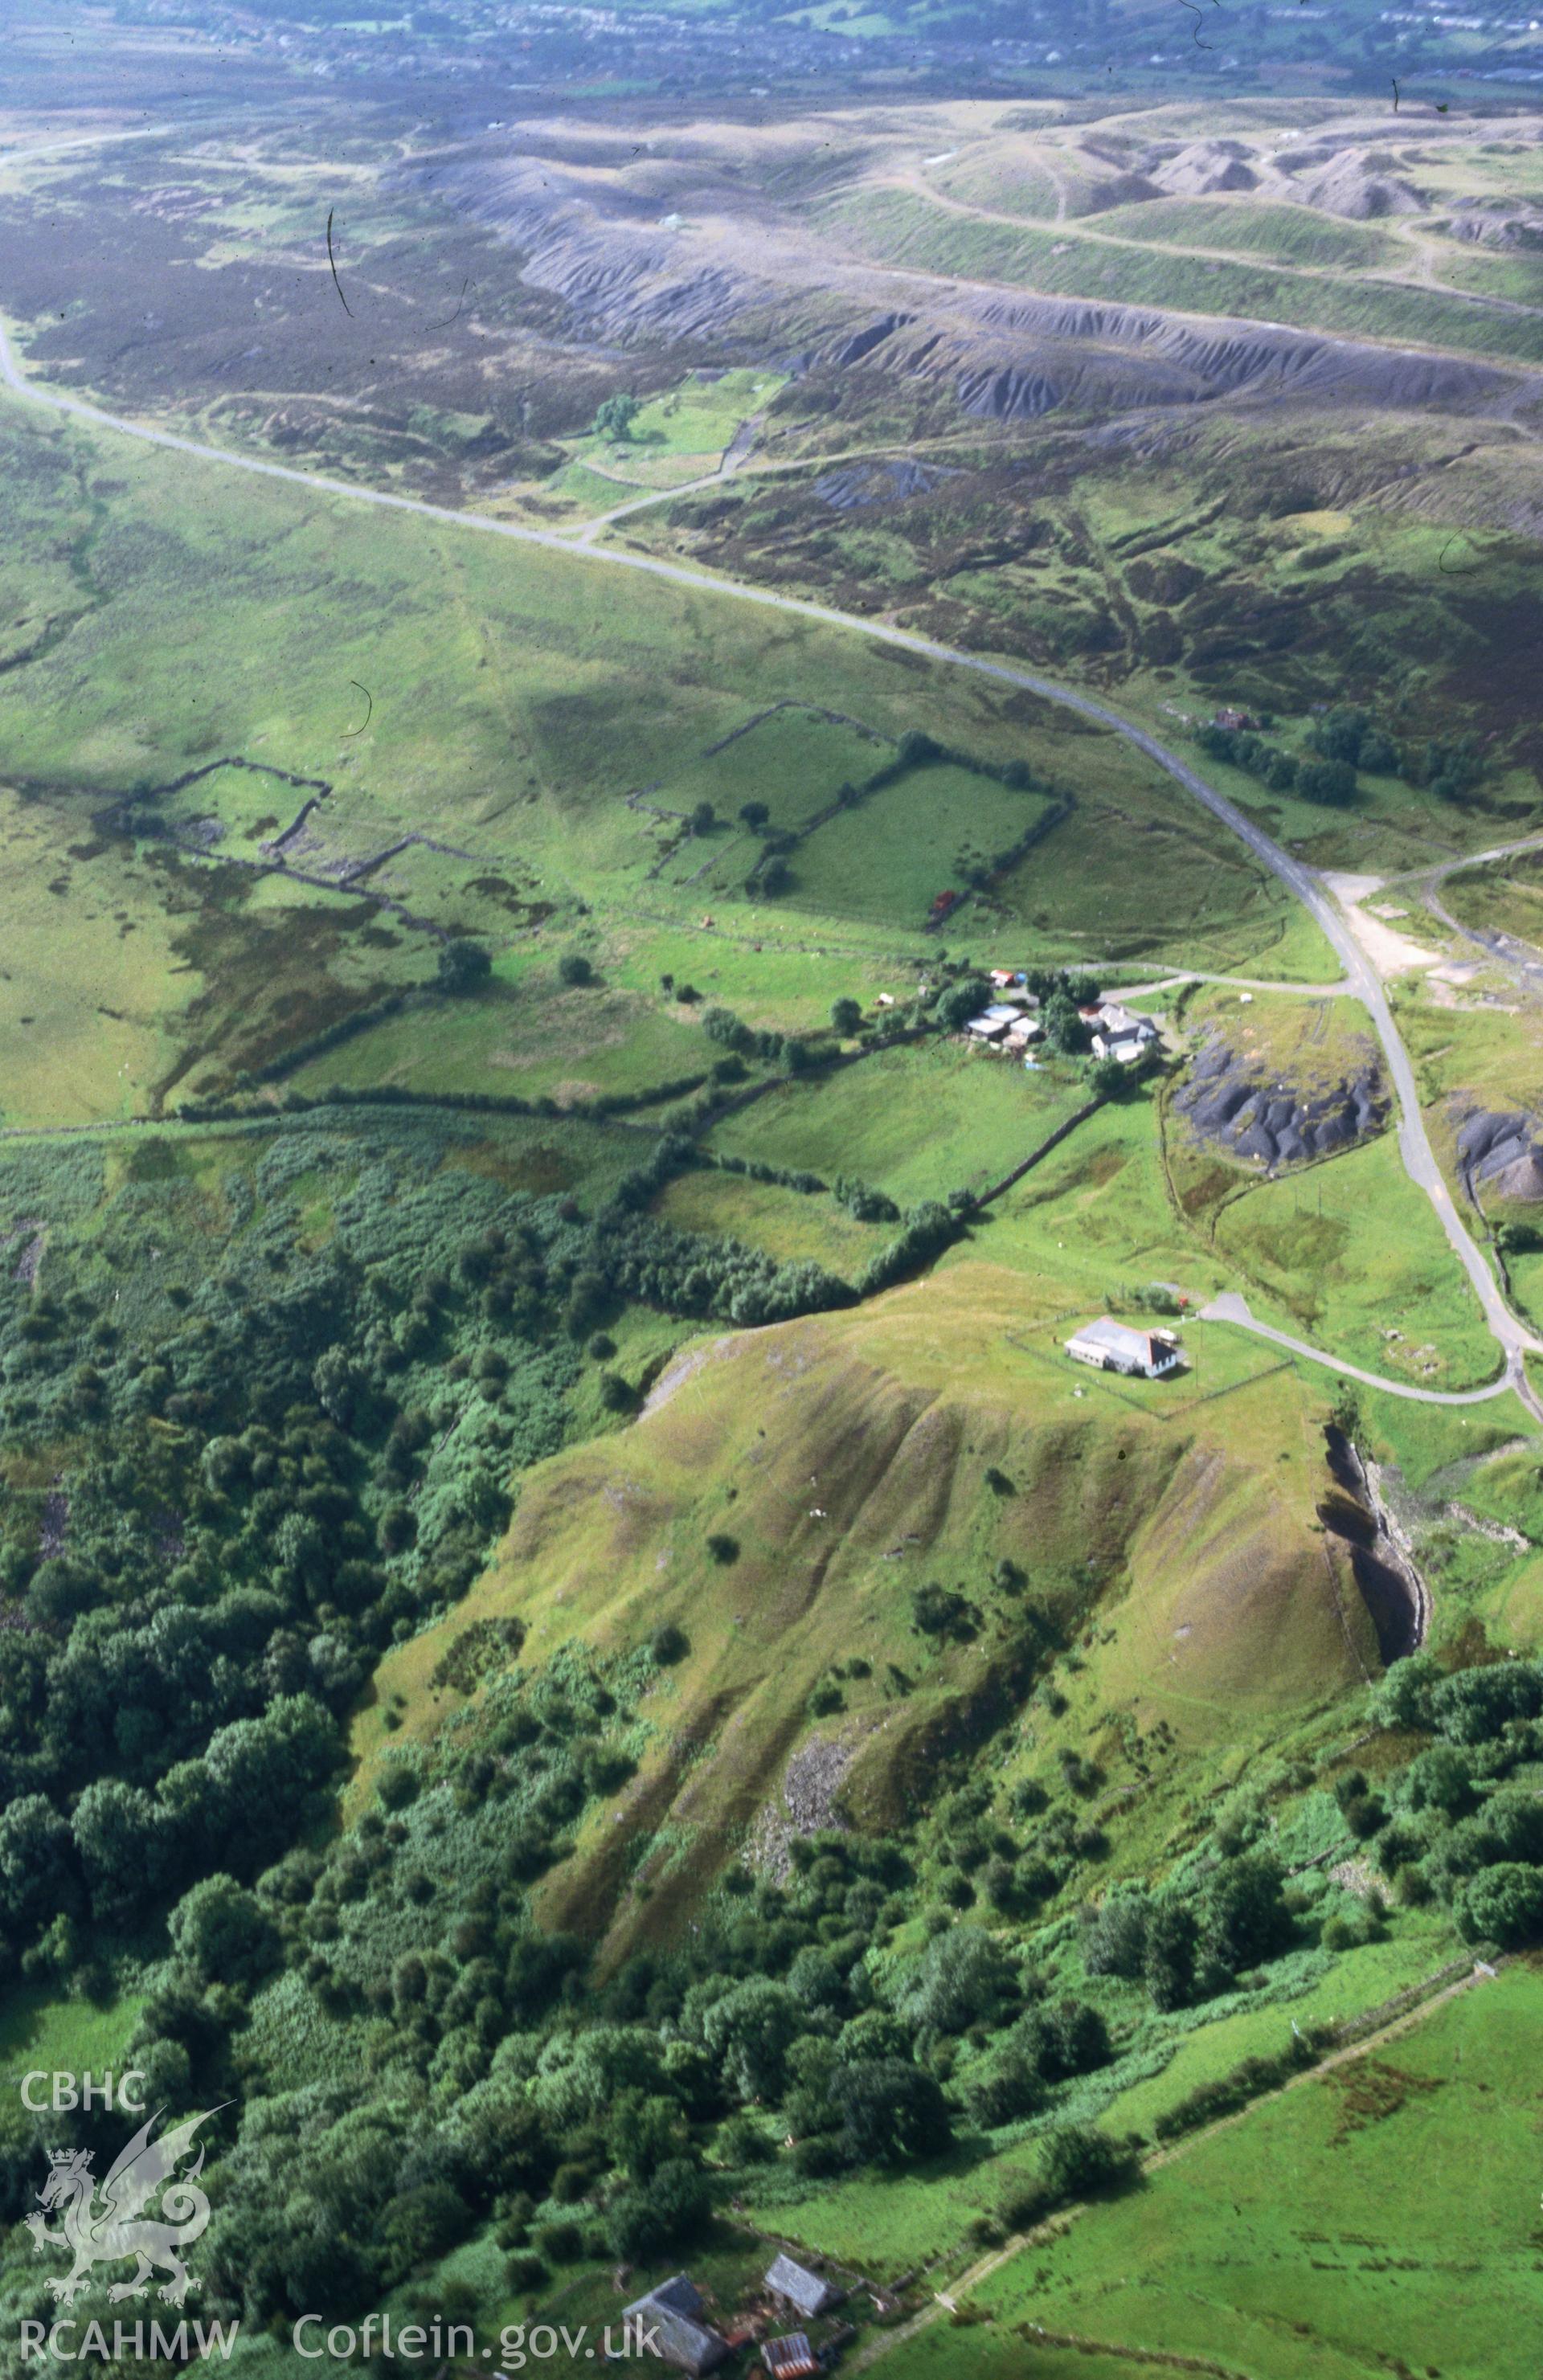 Slide of RCAHMW colour oblique aerial photograph of Pwll Du Landscape, Blaenavon, taken by C.R. Musson, 24/7/1998.